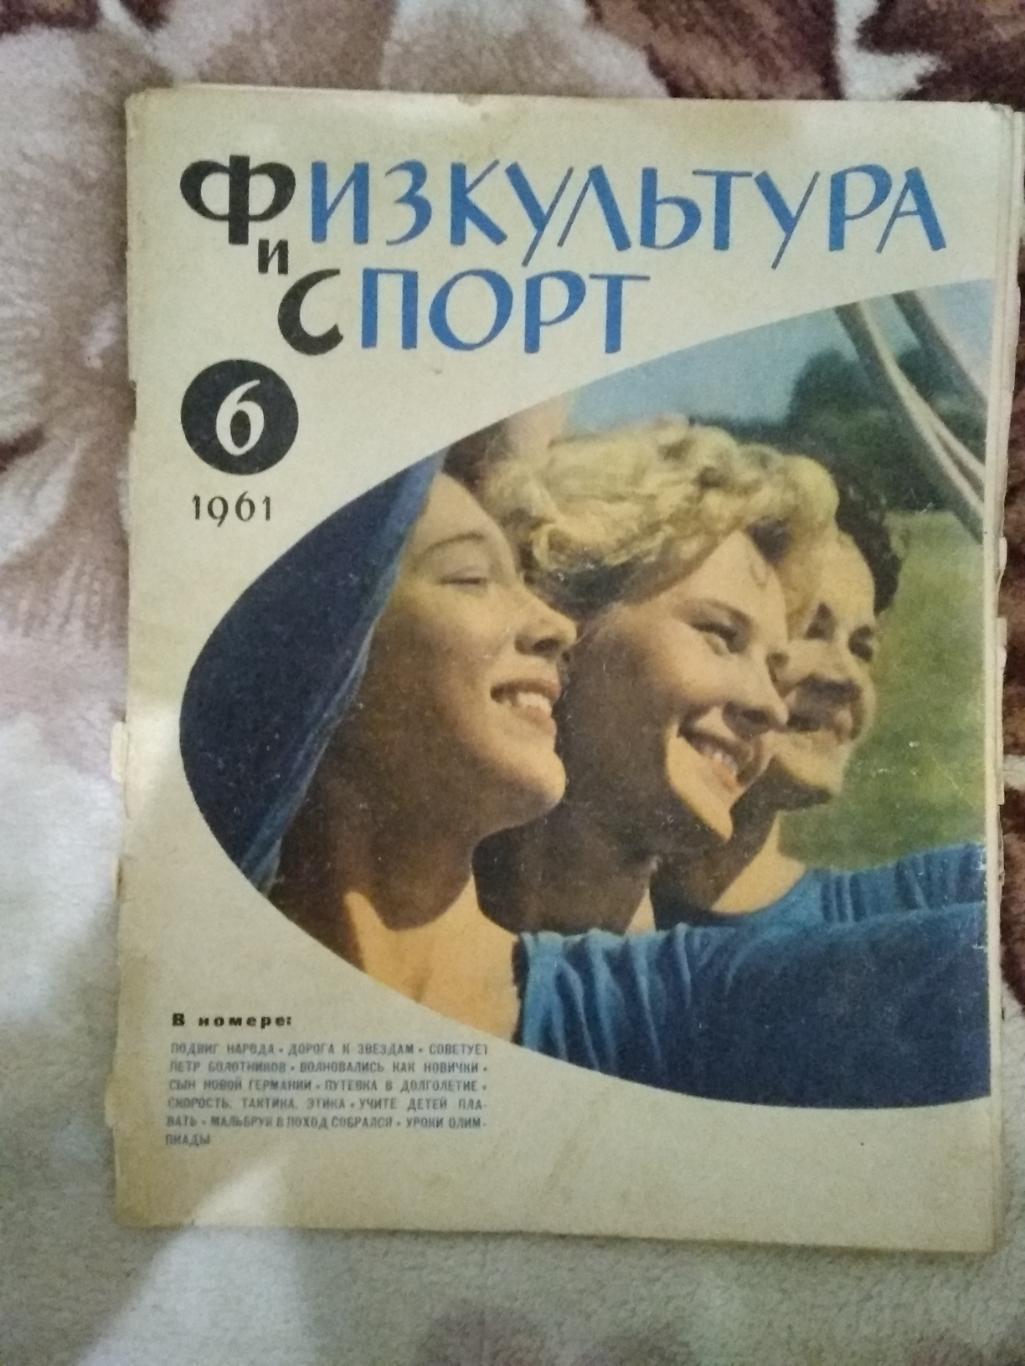 Журнал.Физкультура и спорт № 6 1961 г. (ФиС).